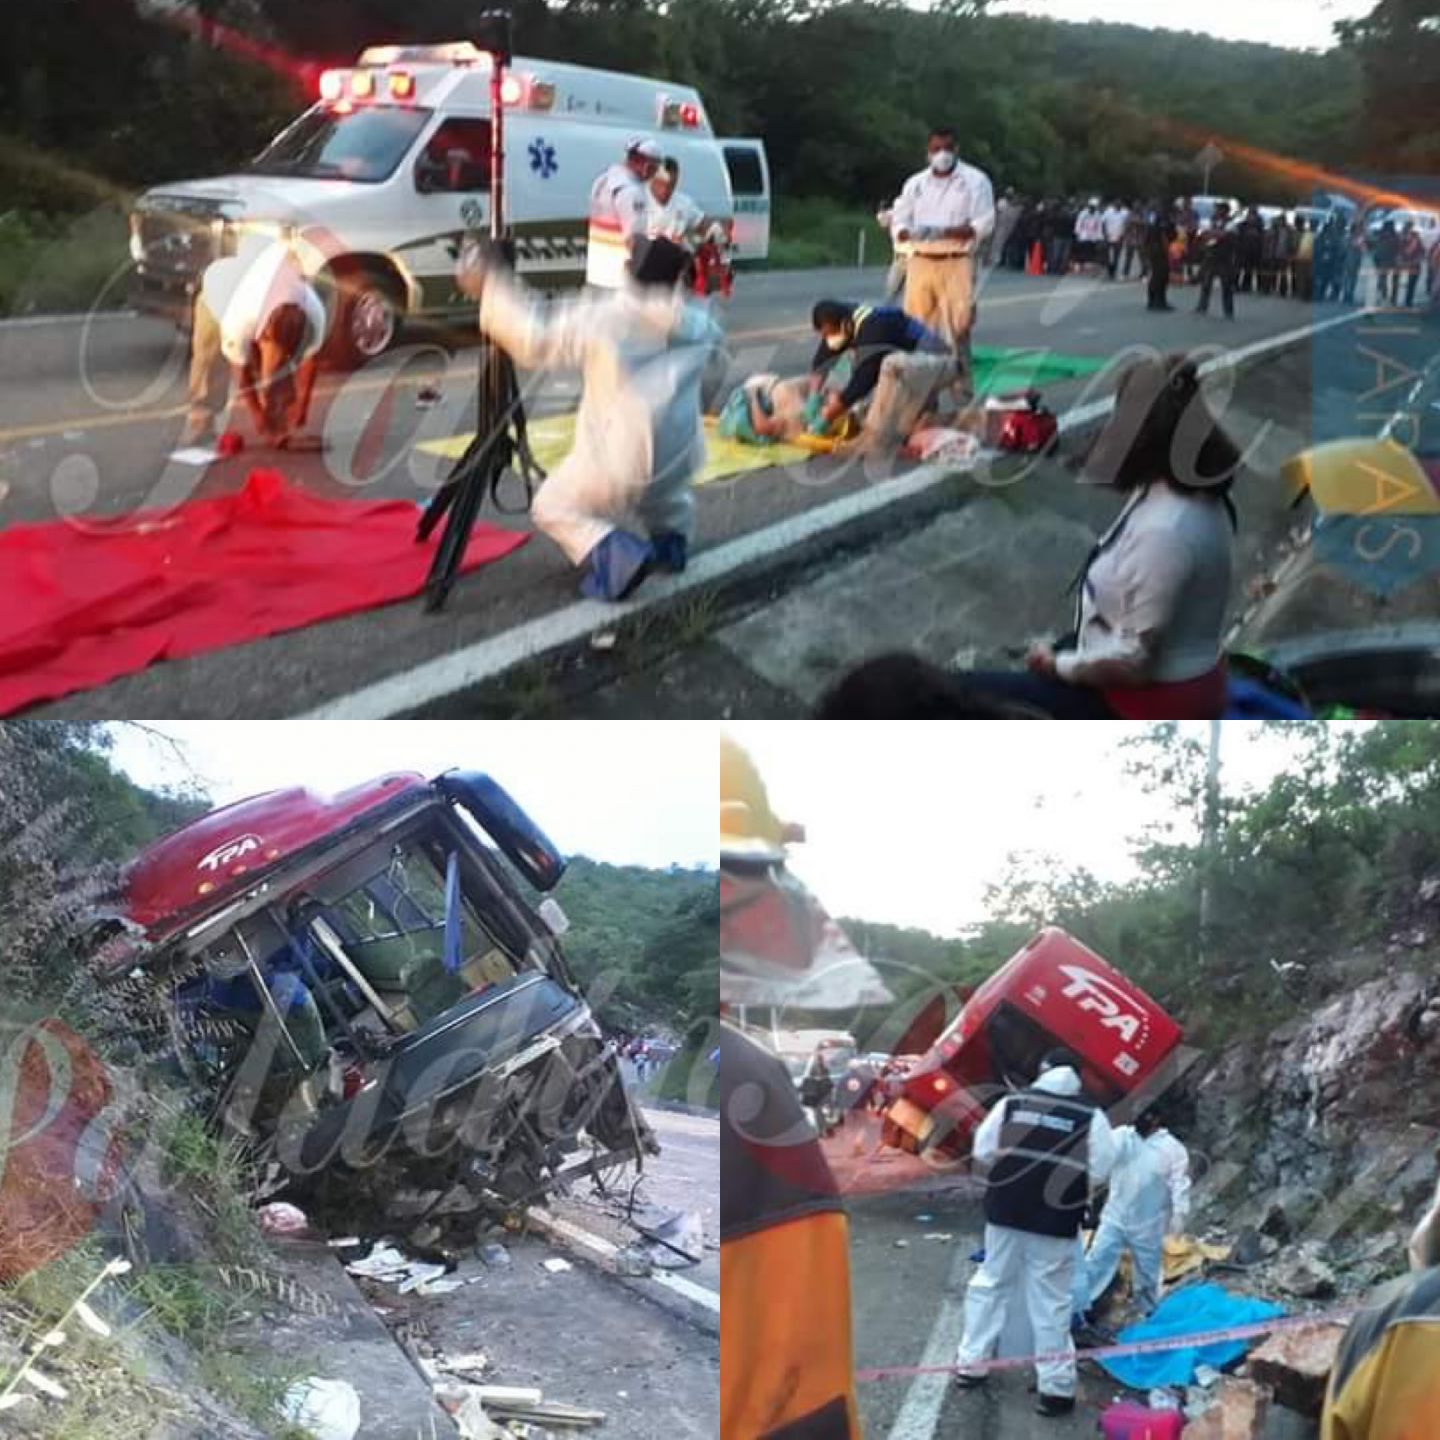 Tragedia en Chiapas: el choque de un autobús dejó al menos 13 muertos y 25 heridos